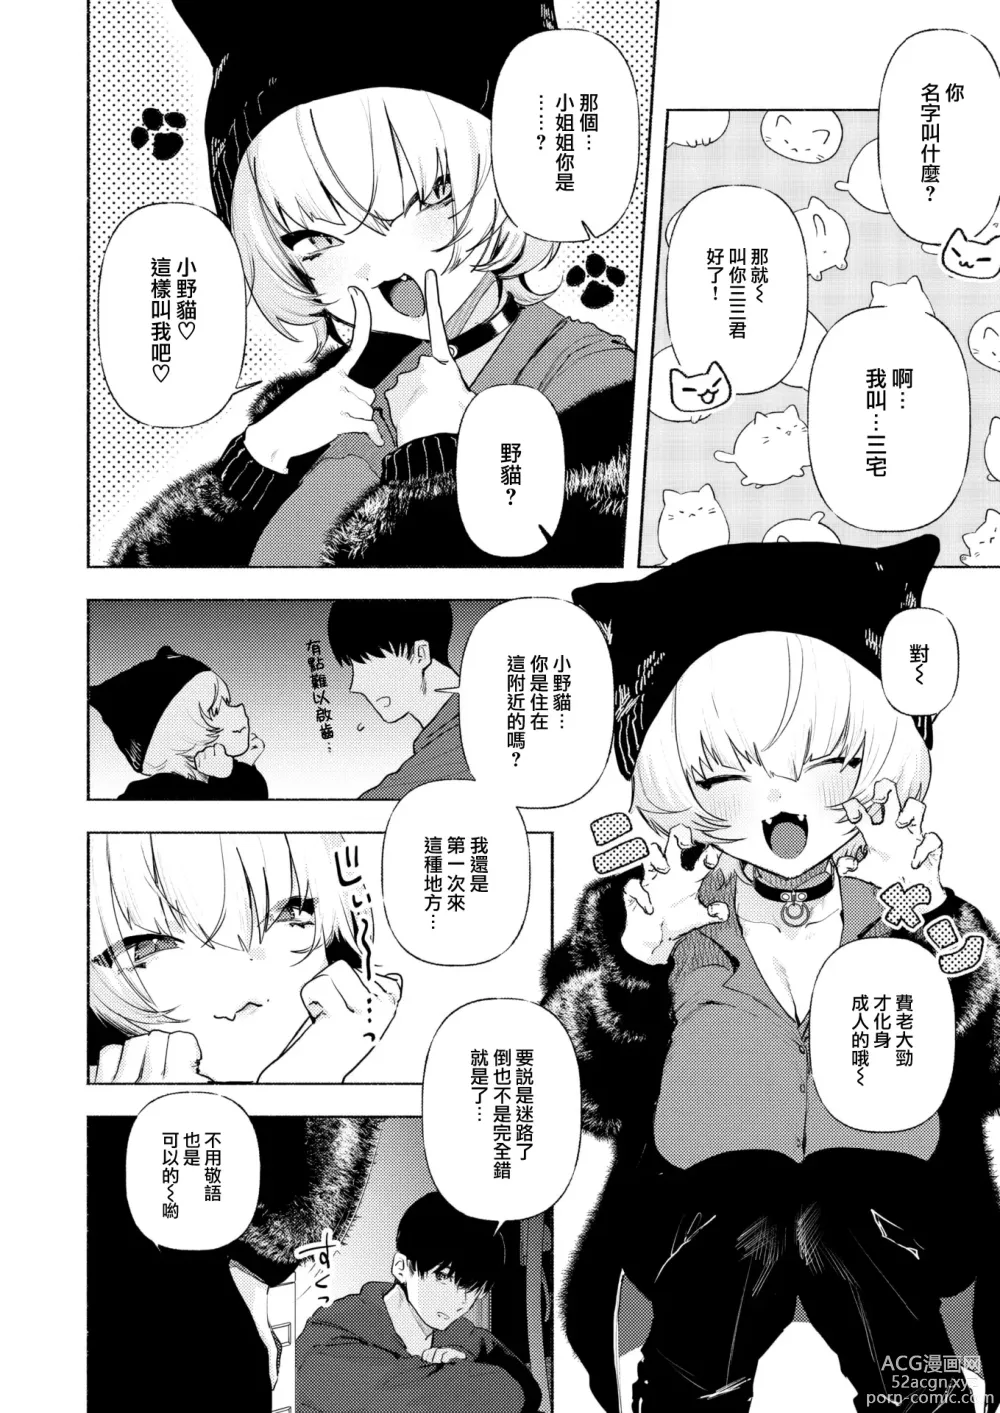 Page 8 of manga Noraneko